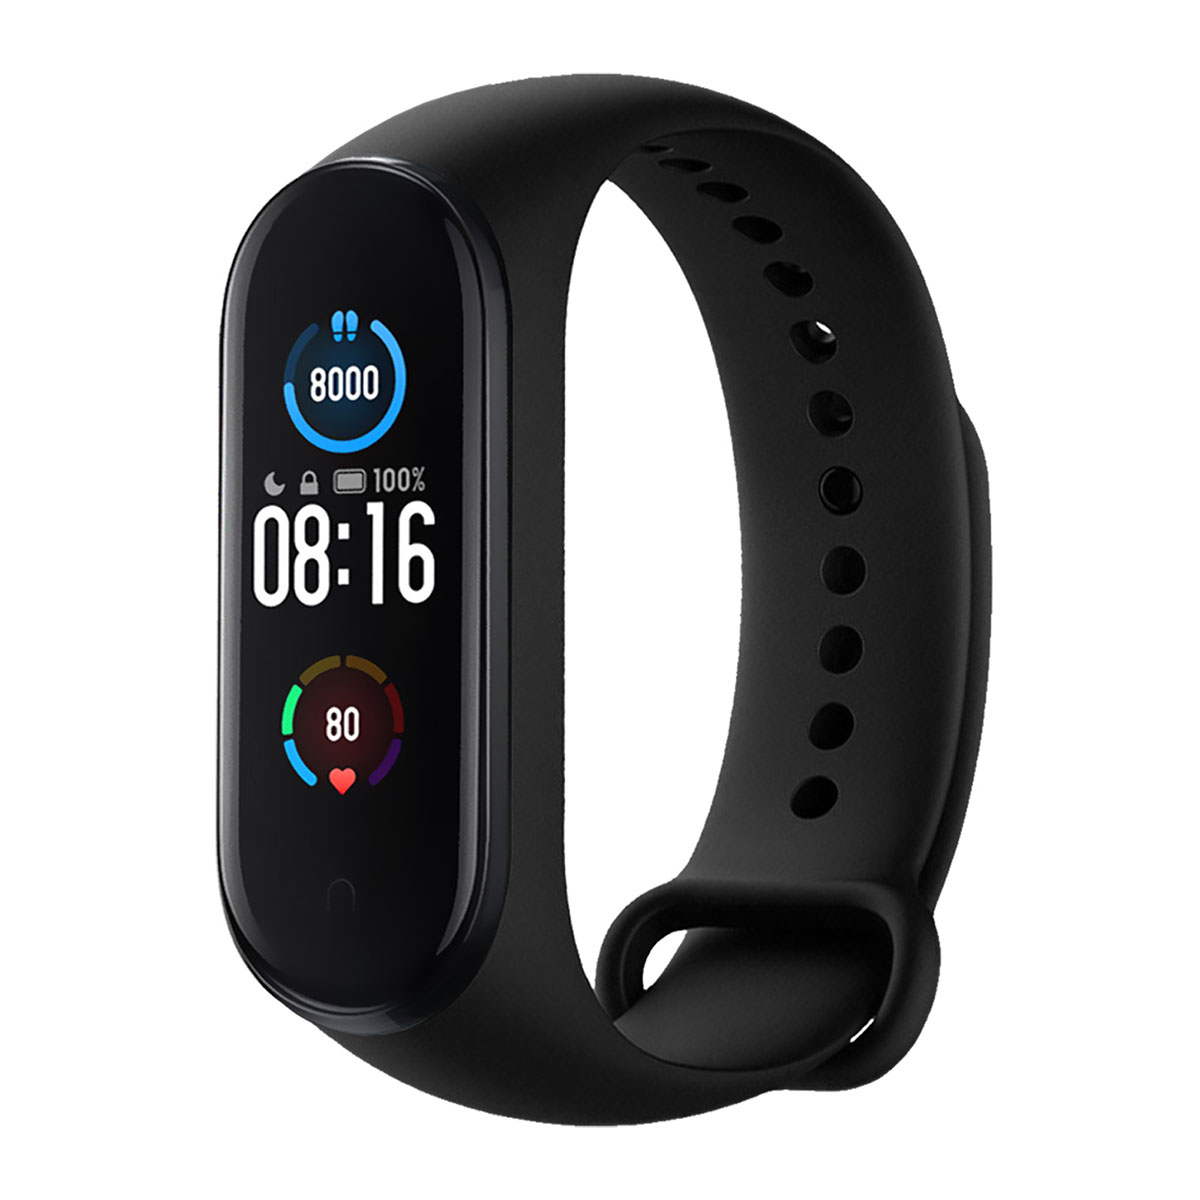 Умные часы и фитнес-браслет XIAOMI Mi Band 5, NFC бесконтактная оплата, цвет черный